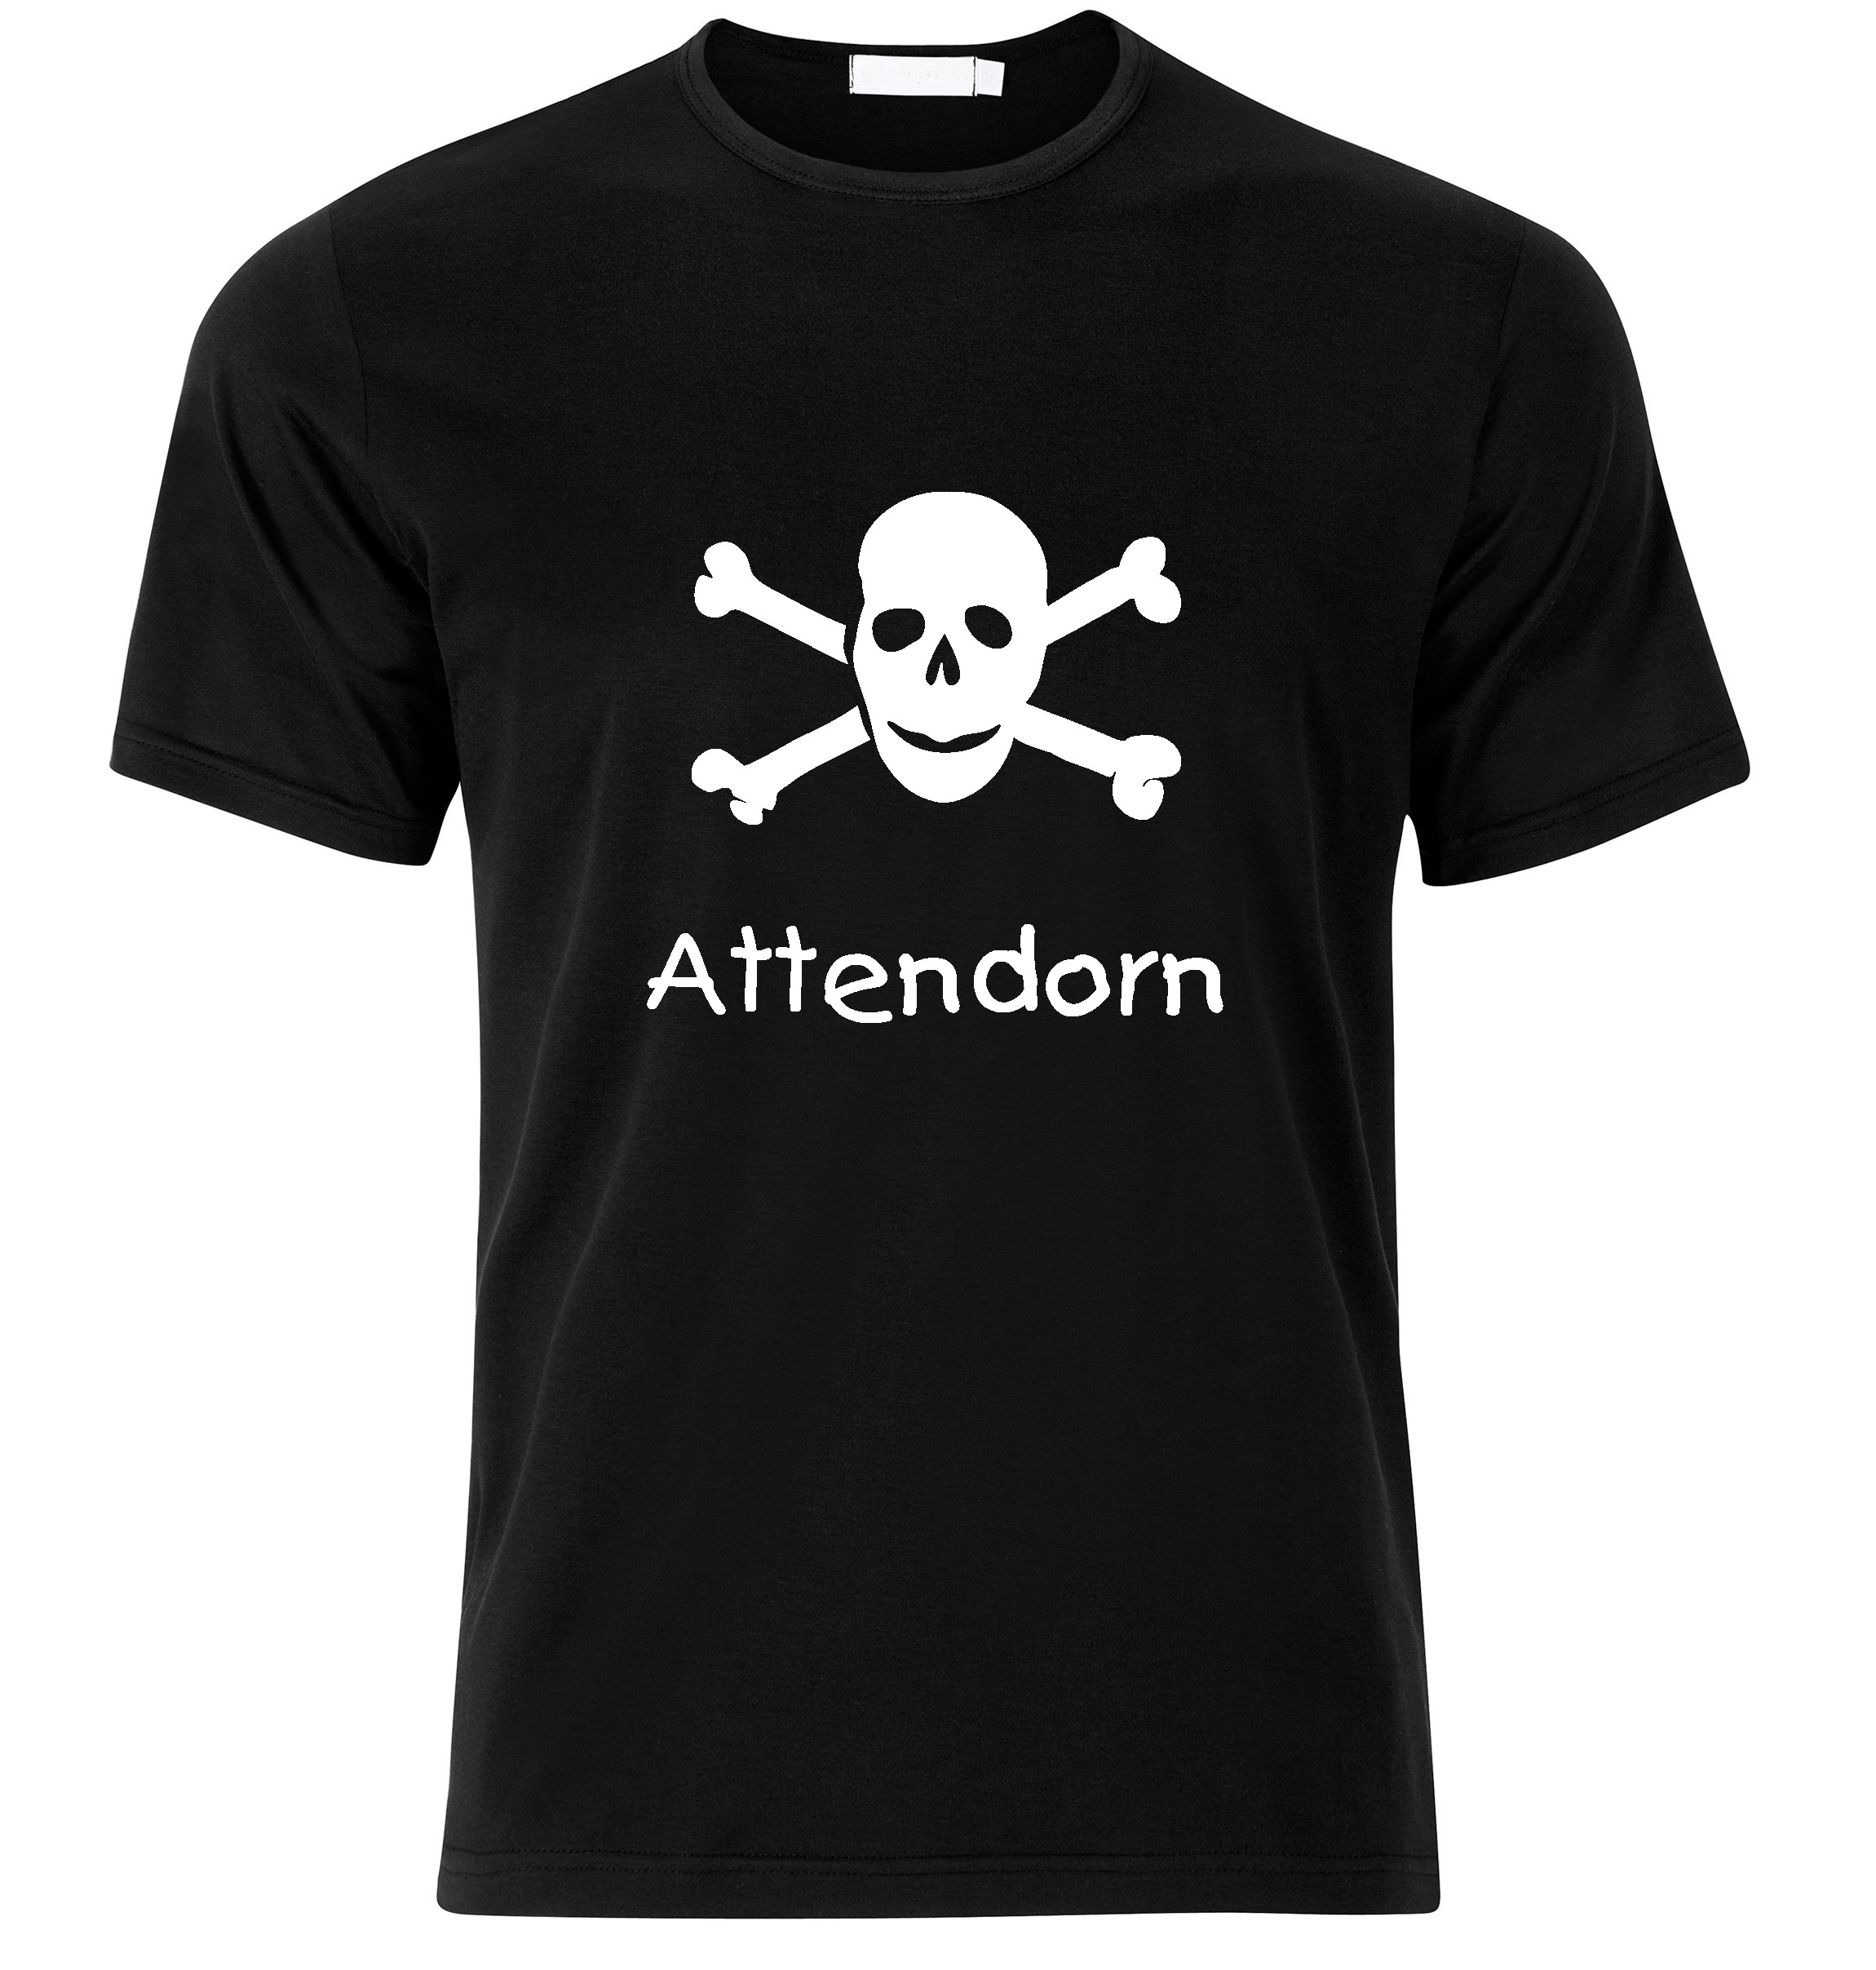 T-Shirt Attendorn Jolly Roger, Totenkopf